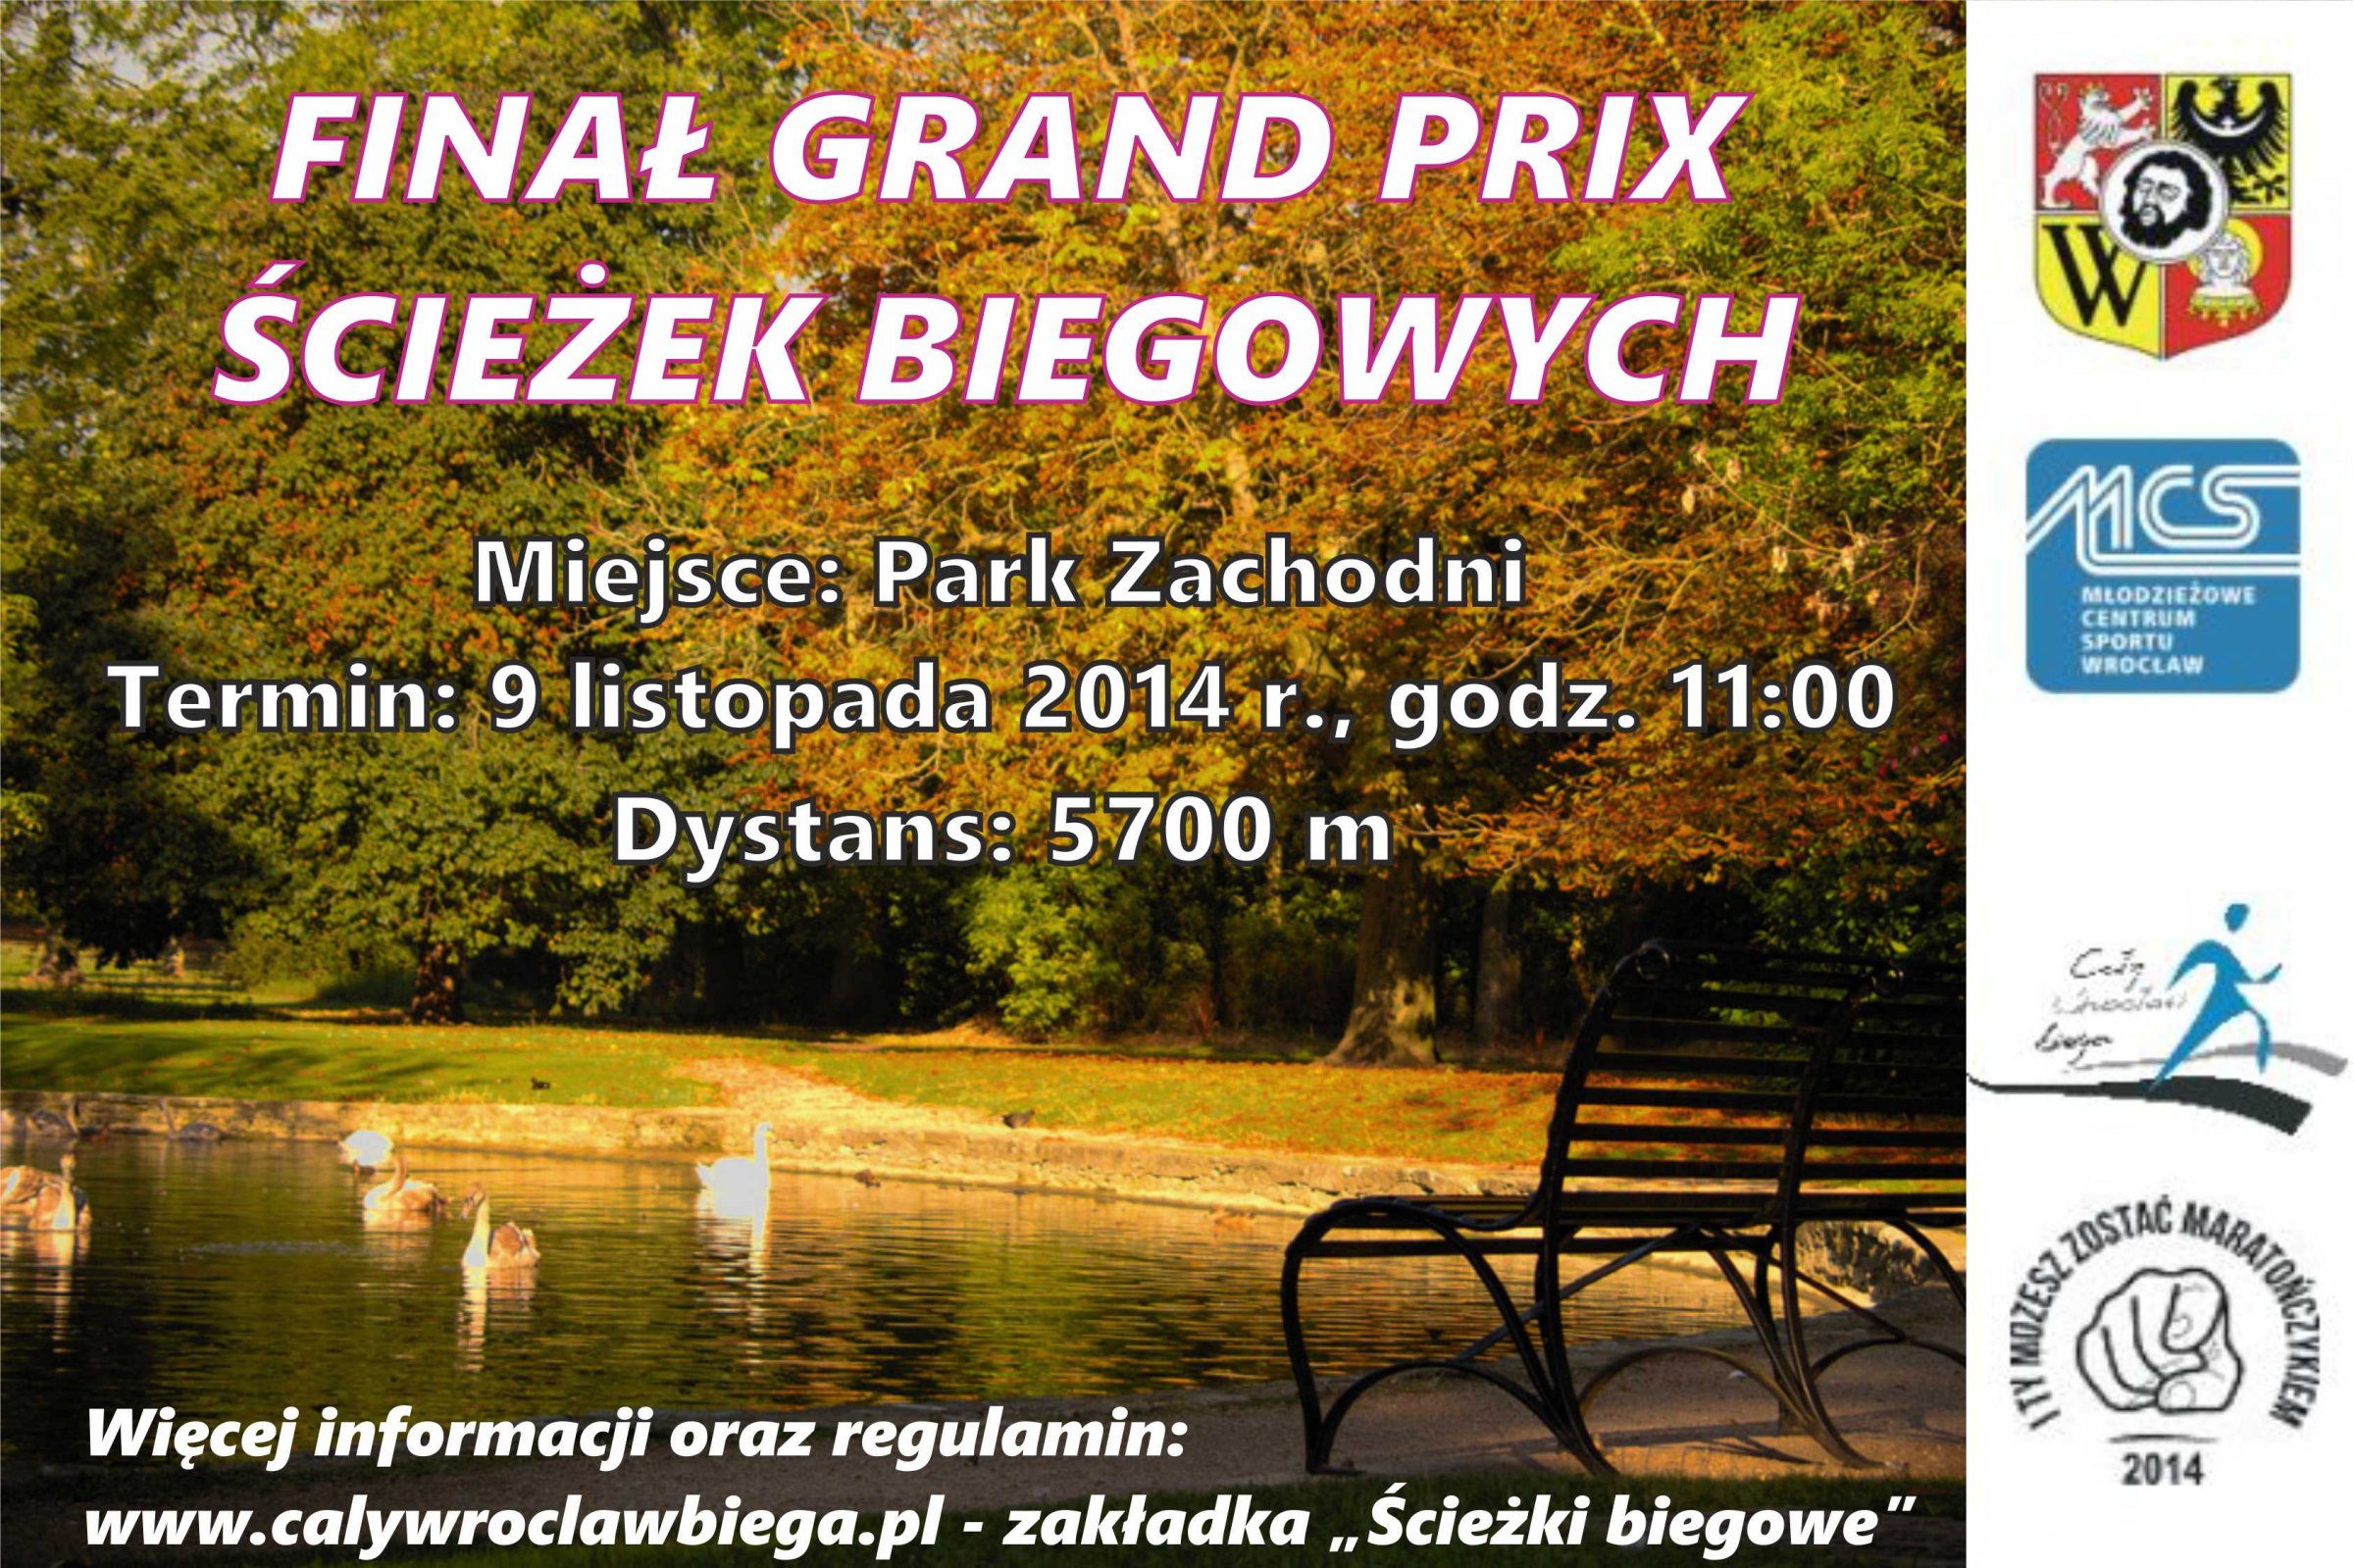 Gran Prix Ścieżek Biegowych we Wrocławiu